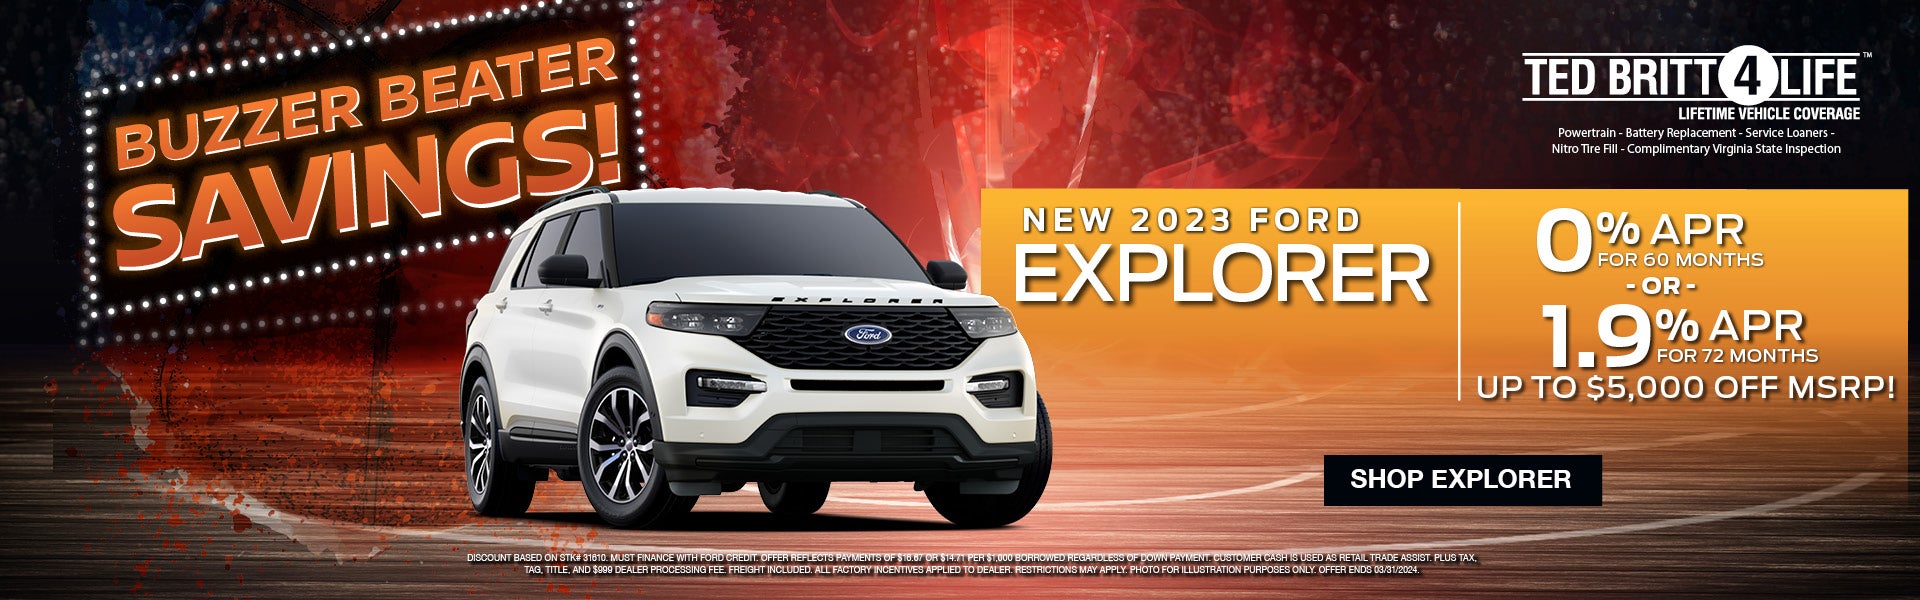 new 2023 ford explorer